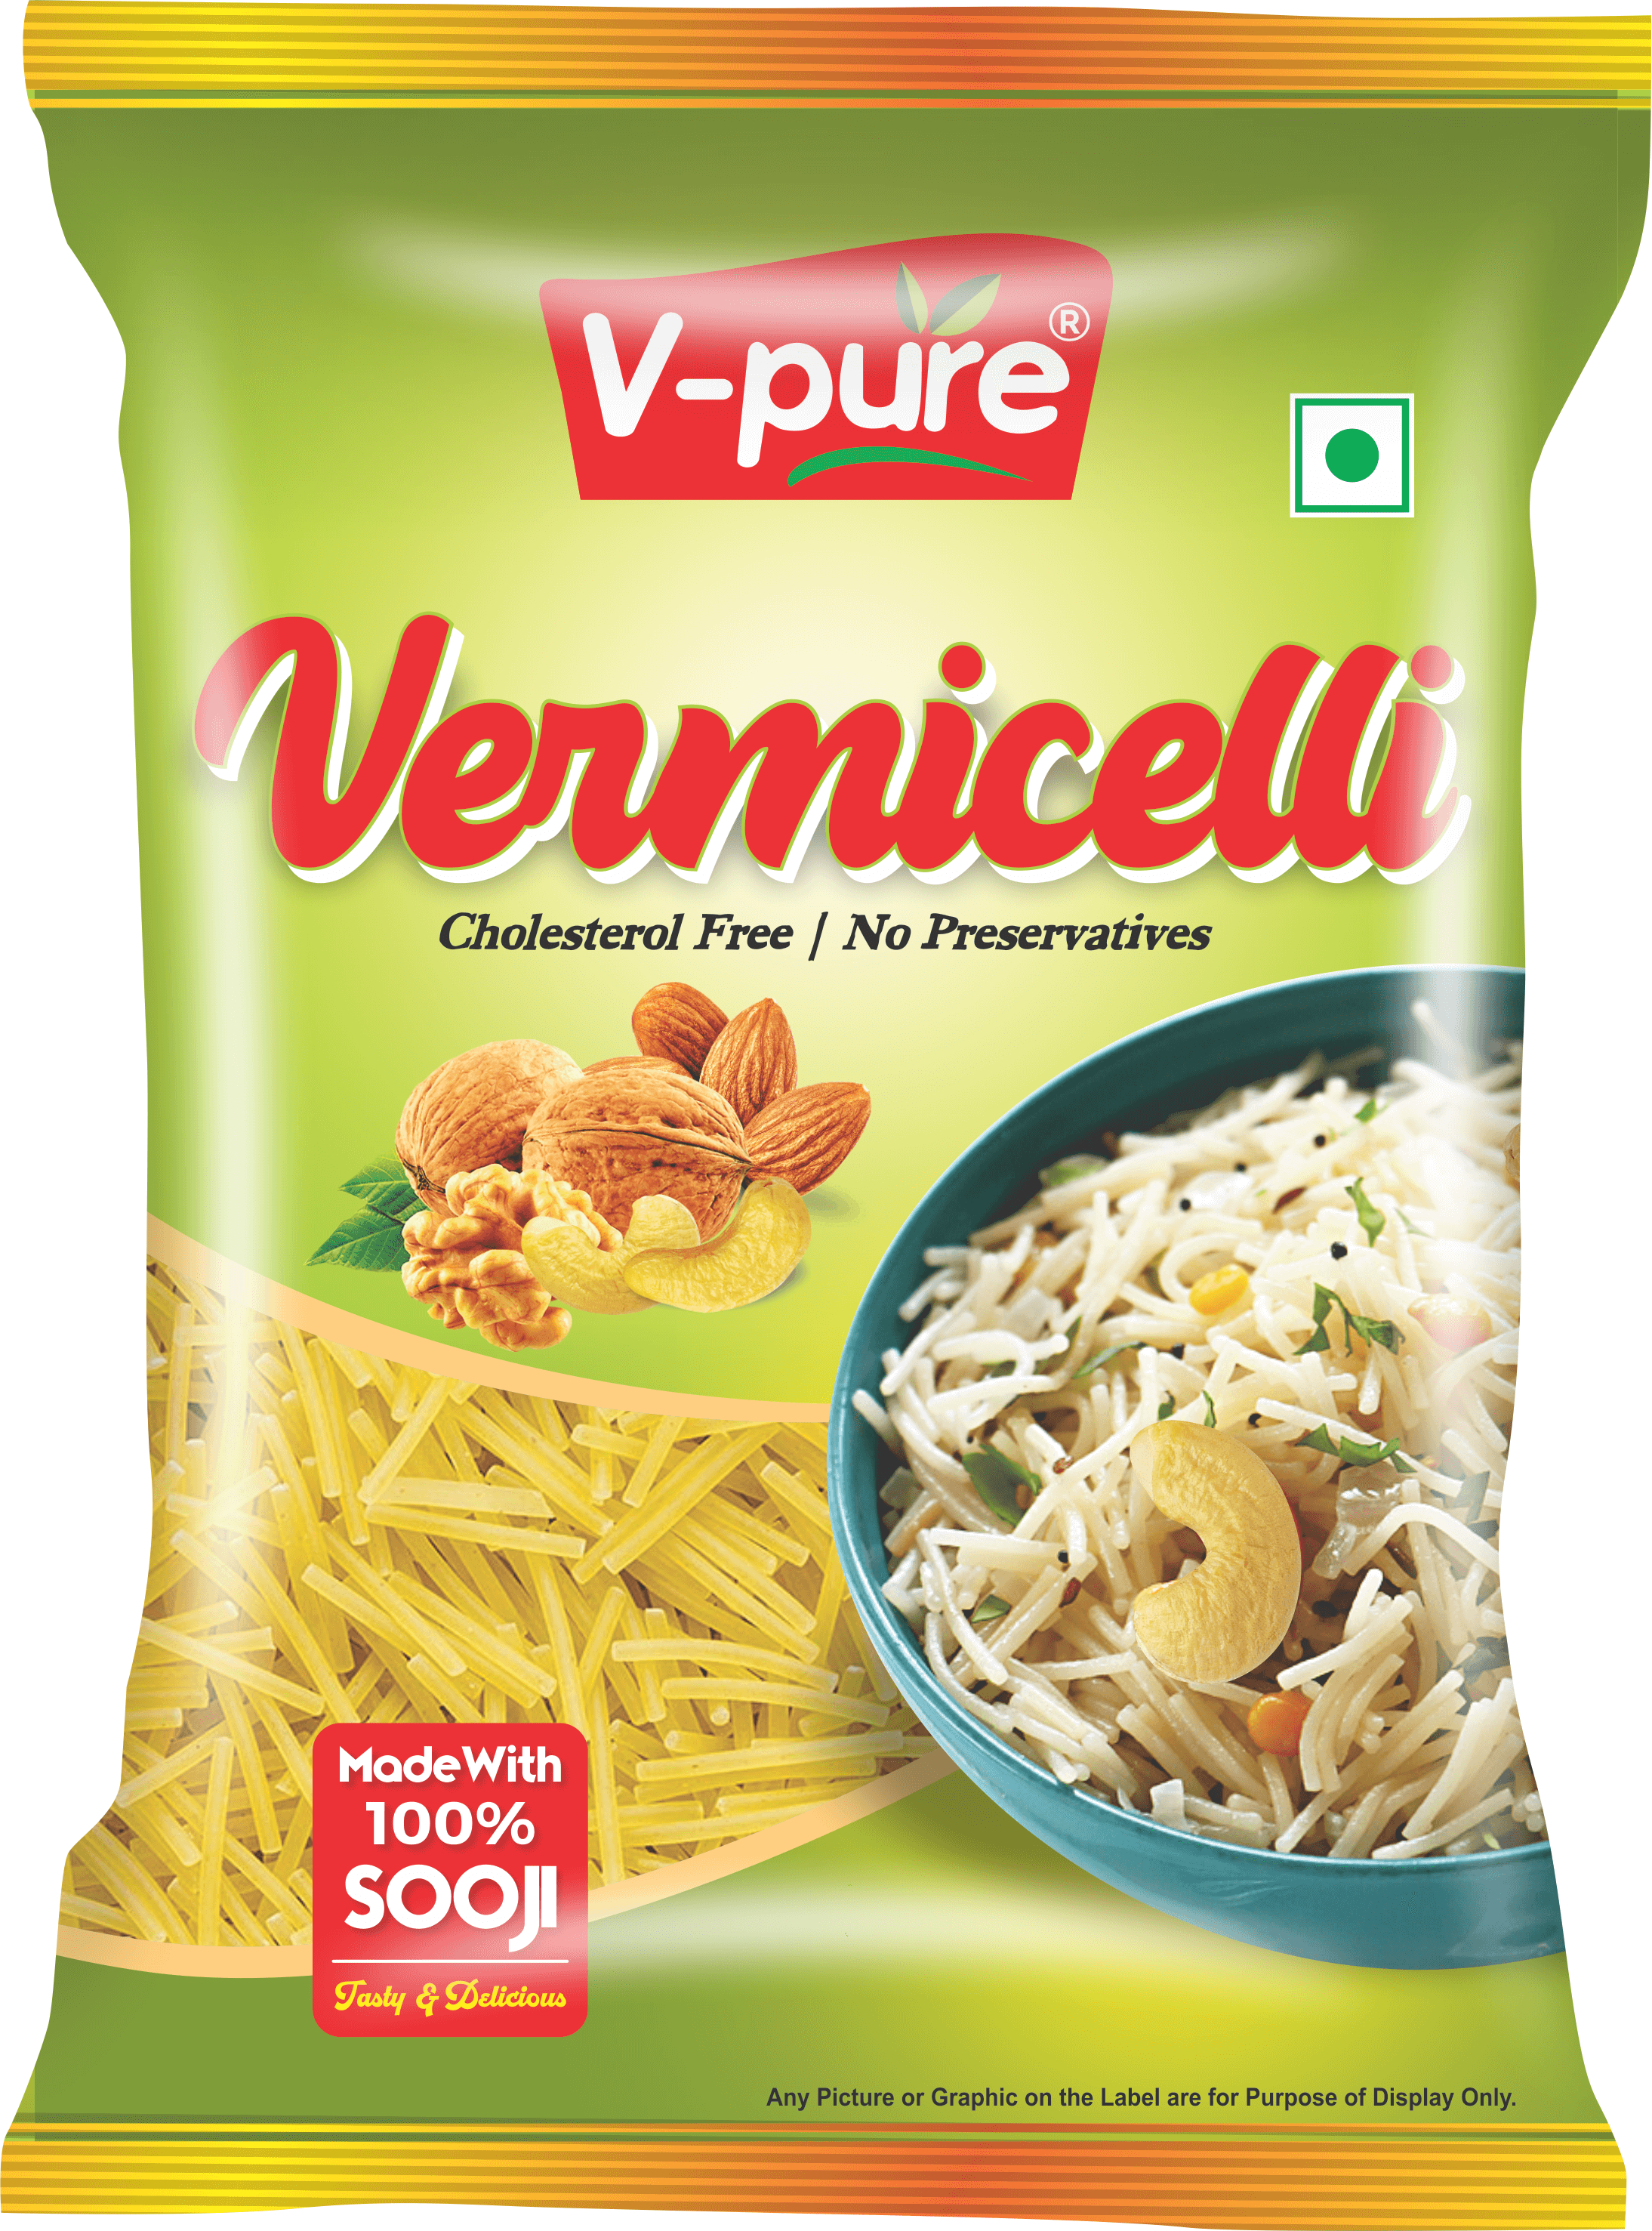 V-pure Vermicelli